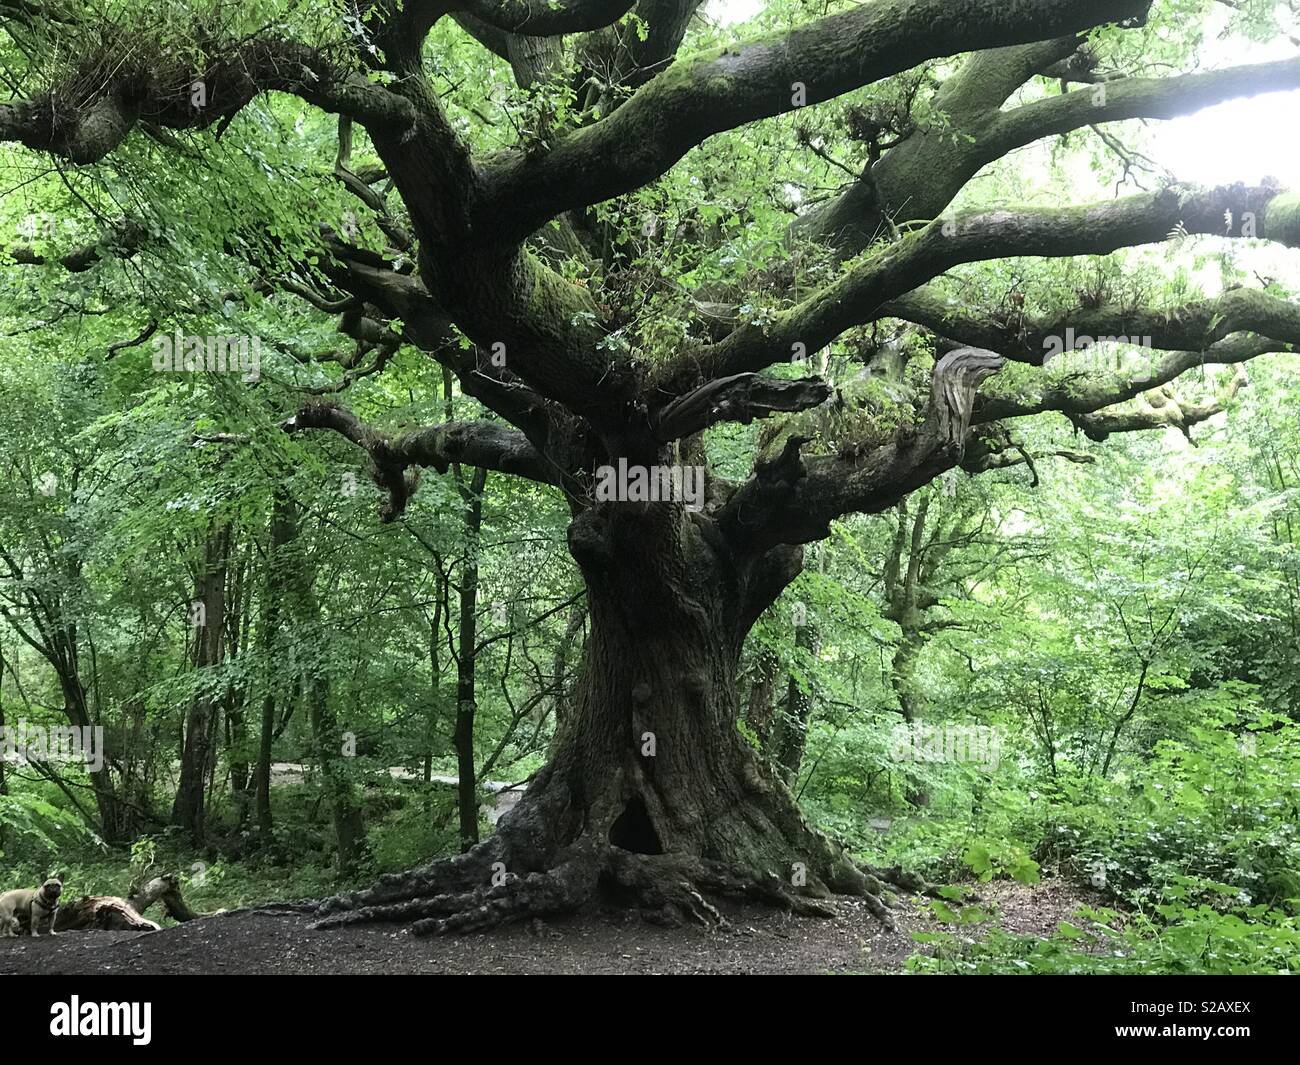 Knarley tree Stock Photo